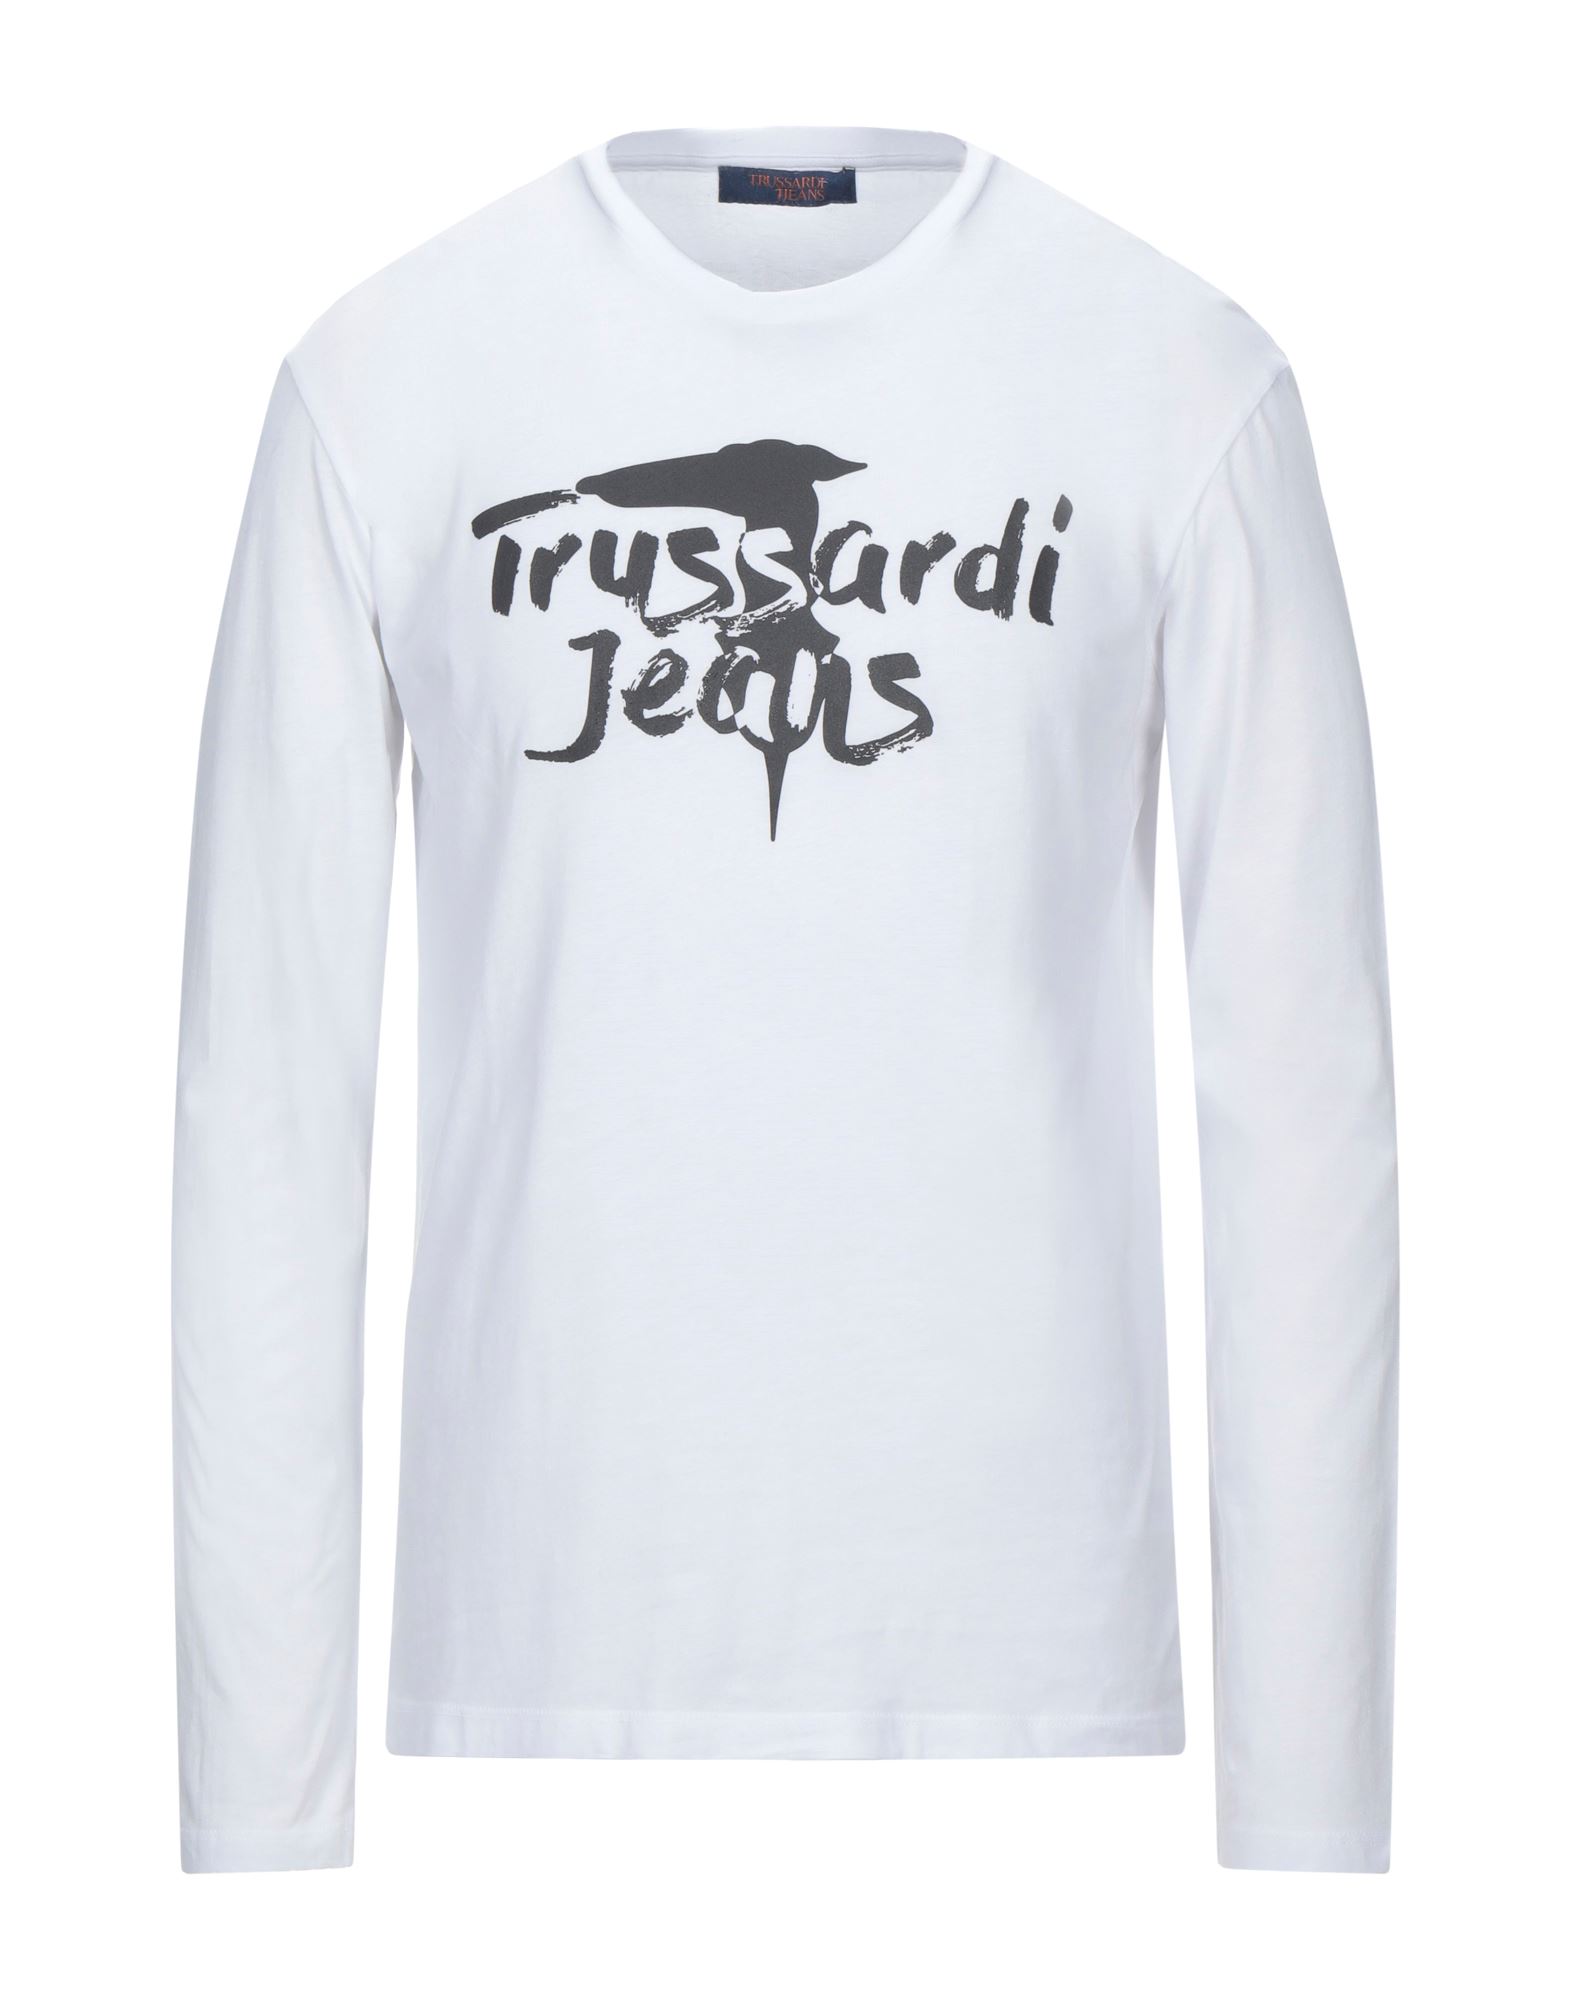 TRUSSARDI JEANS T-shirts - Item 12537085